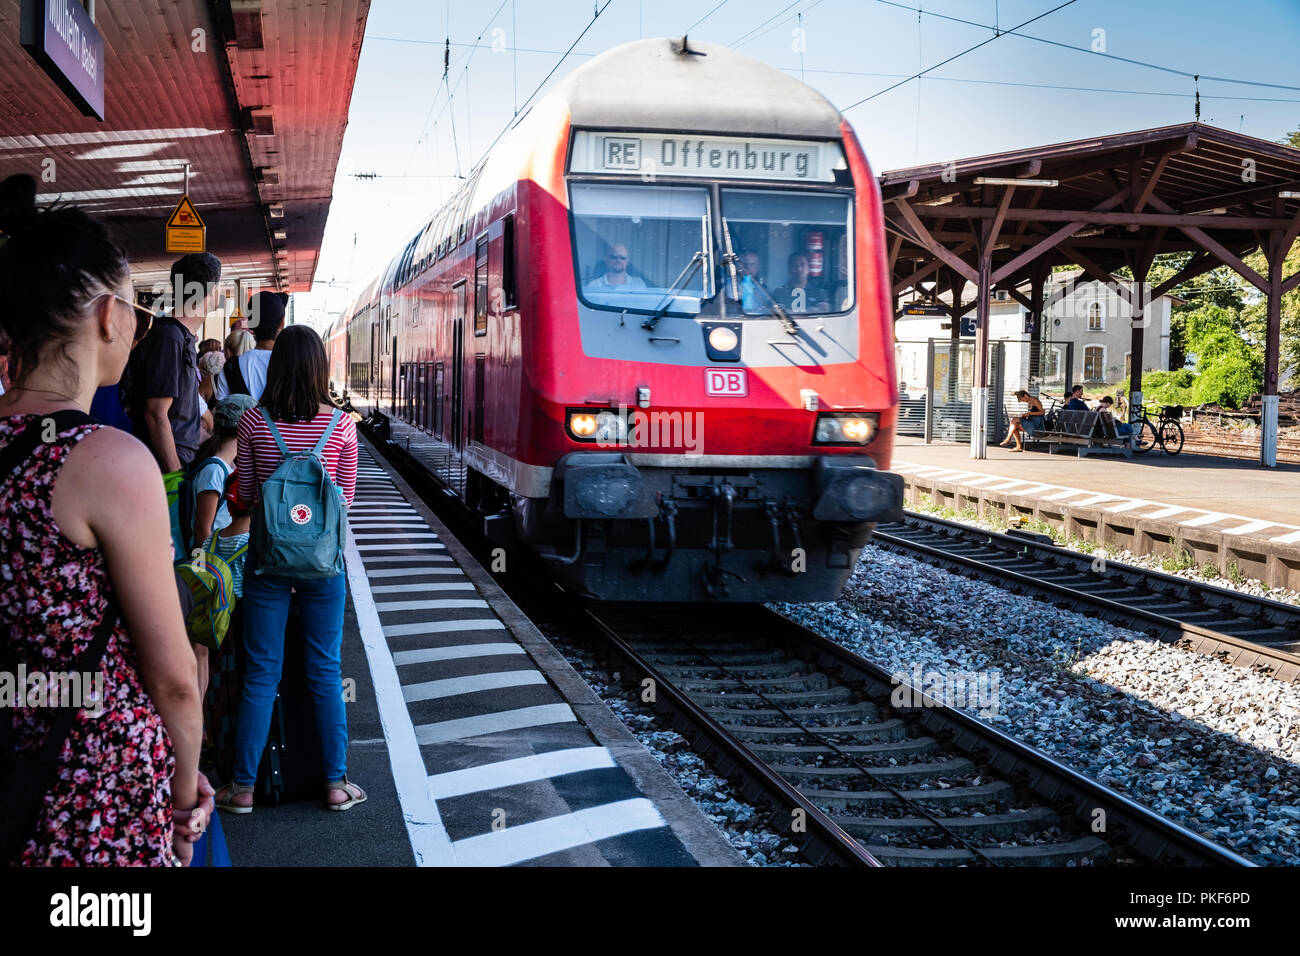 À Mullheim, Baden-Wurttemberg, Allemagne - 30 juillet 2018 : DB train régional de Bâle (Suisse) à Offenburg (Allemagne) arrivant à Mullheim HBF Banque D'Images